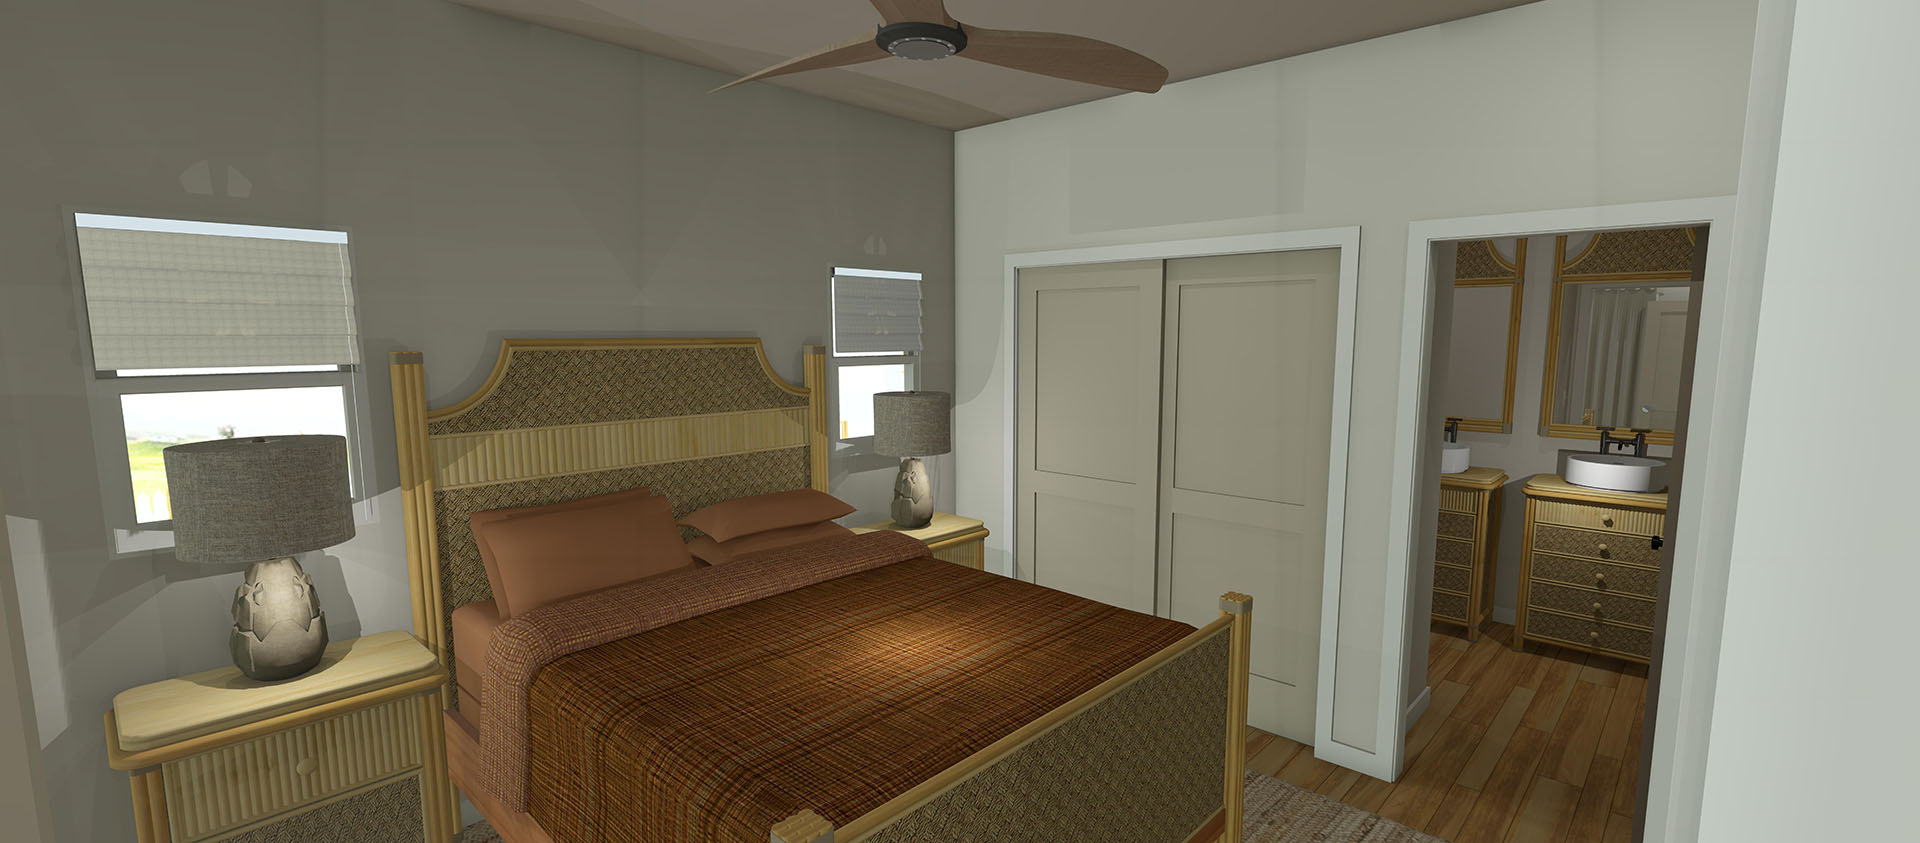 Oneki interior master bedroom